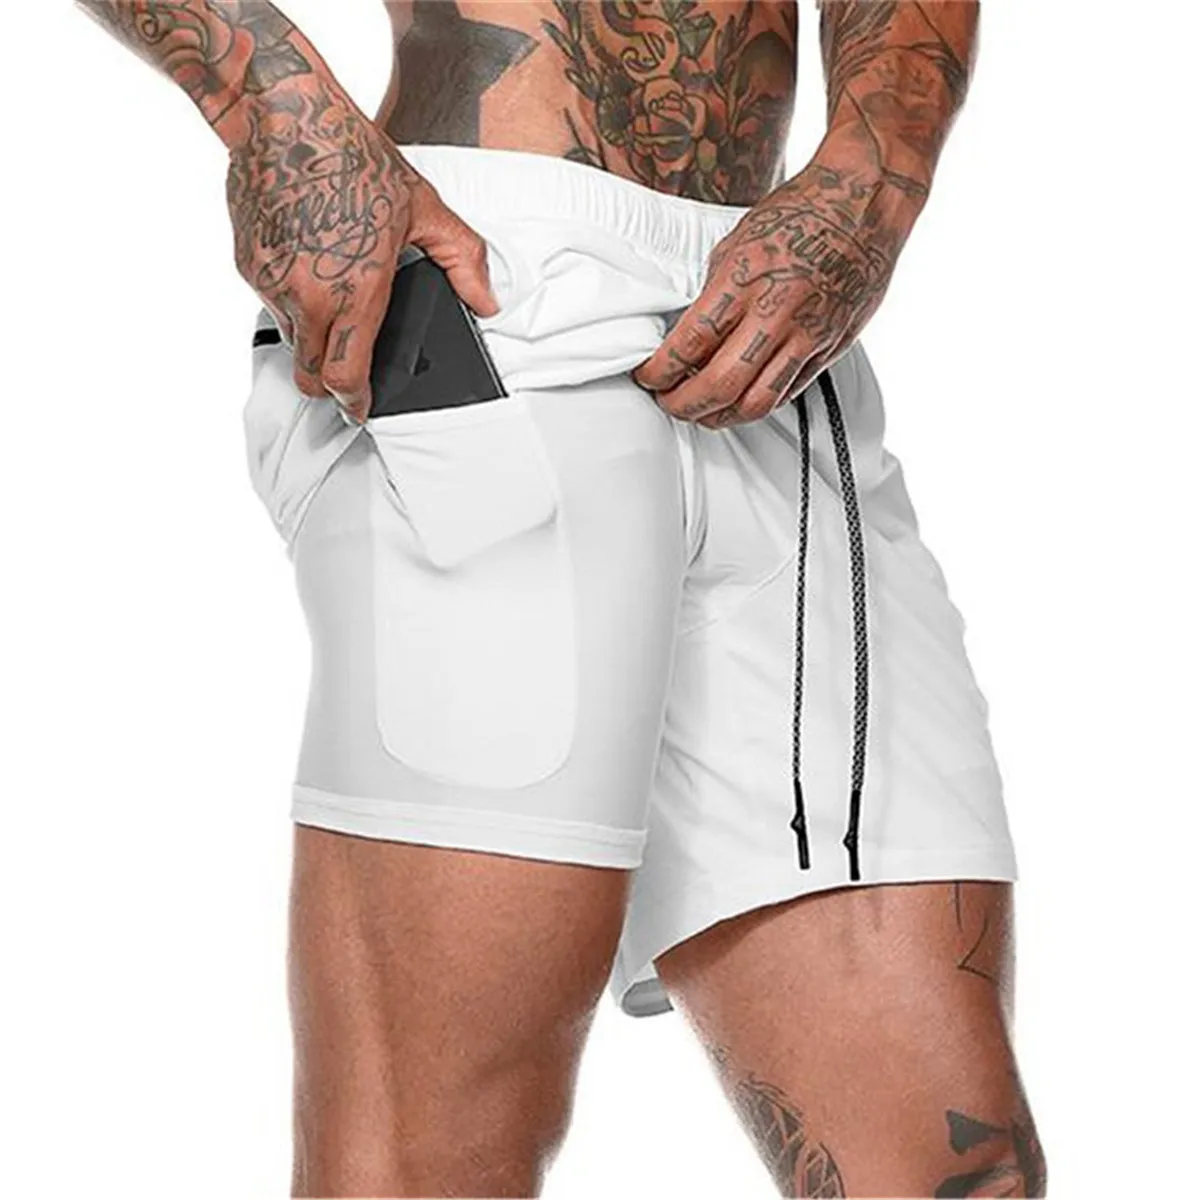 Bóxer de doble cubierta para hombre, pantalones cortos blancos de alta calidad con forro para entrenamiento deportivo, Para correr, gimnasio, con bolsillo para teléfono